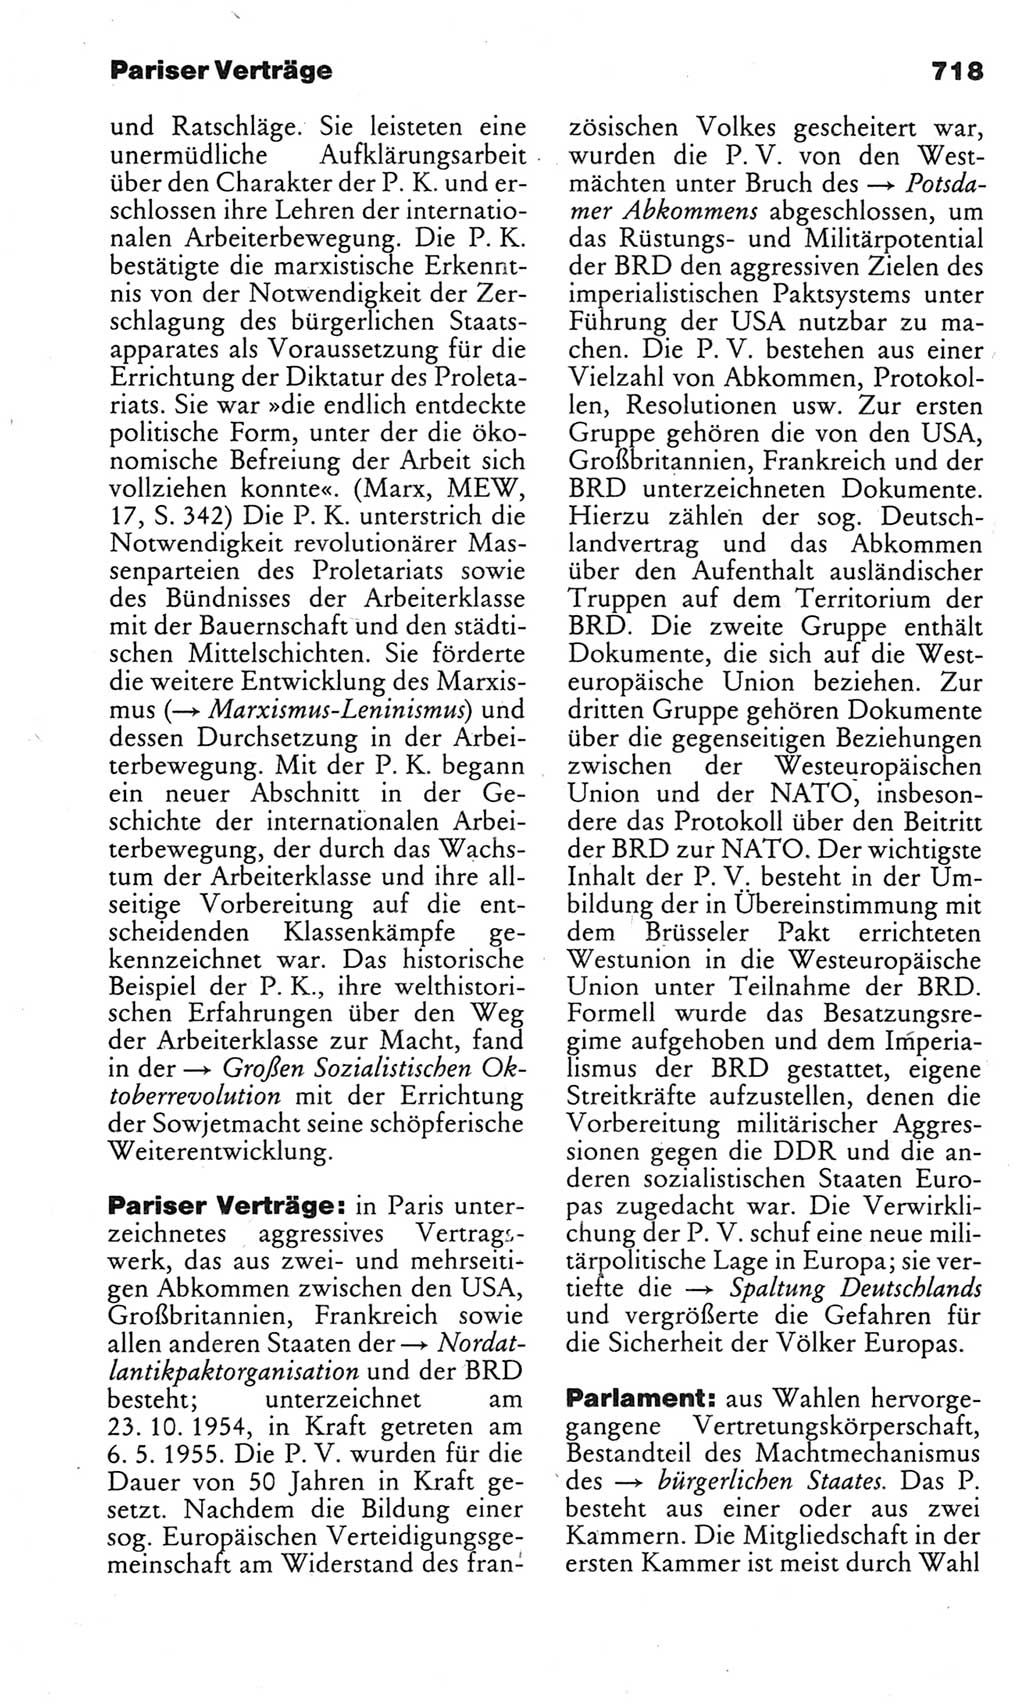 Kleines politisches Wörterbuch [Deutsche Demokratische Republik (DDR)] 1983, Seite 718 (Kl. pol. Wb. DDR 1983, S. 718)